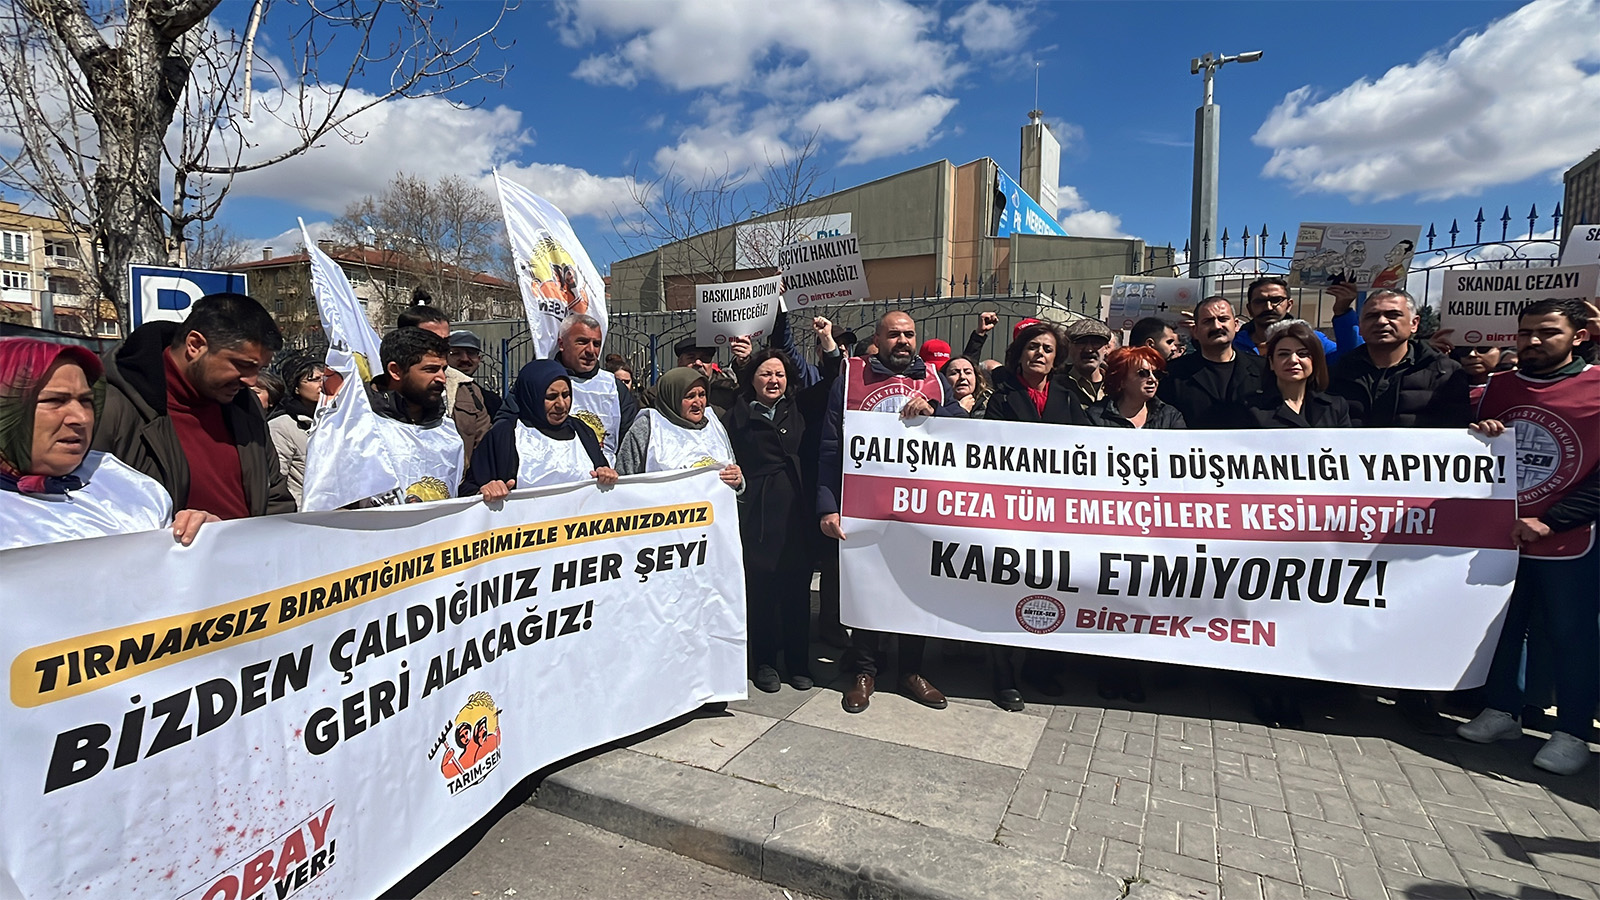 1.5 milyon lira ceza kesilen BİRTEK-Sen'den bakanlık önünde protesto: Bu cezanın Türkiye tarihinde örneği görülmemiştir